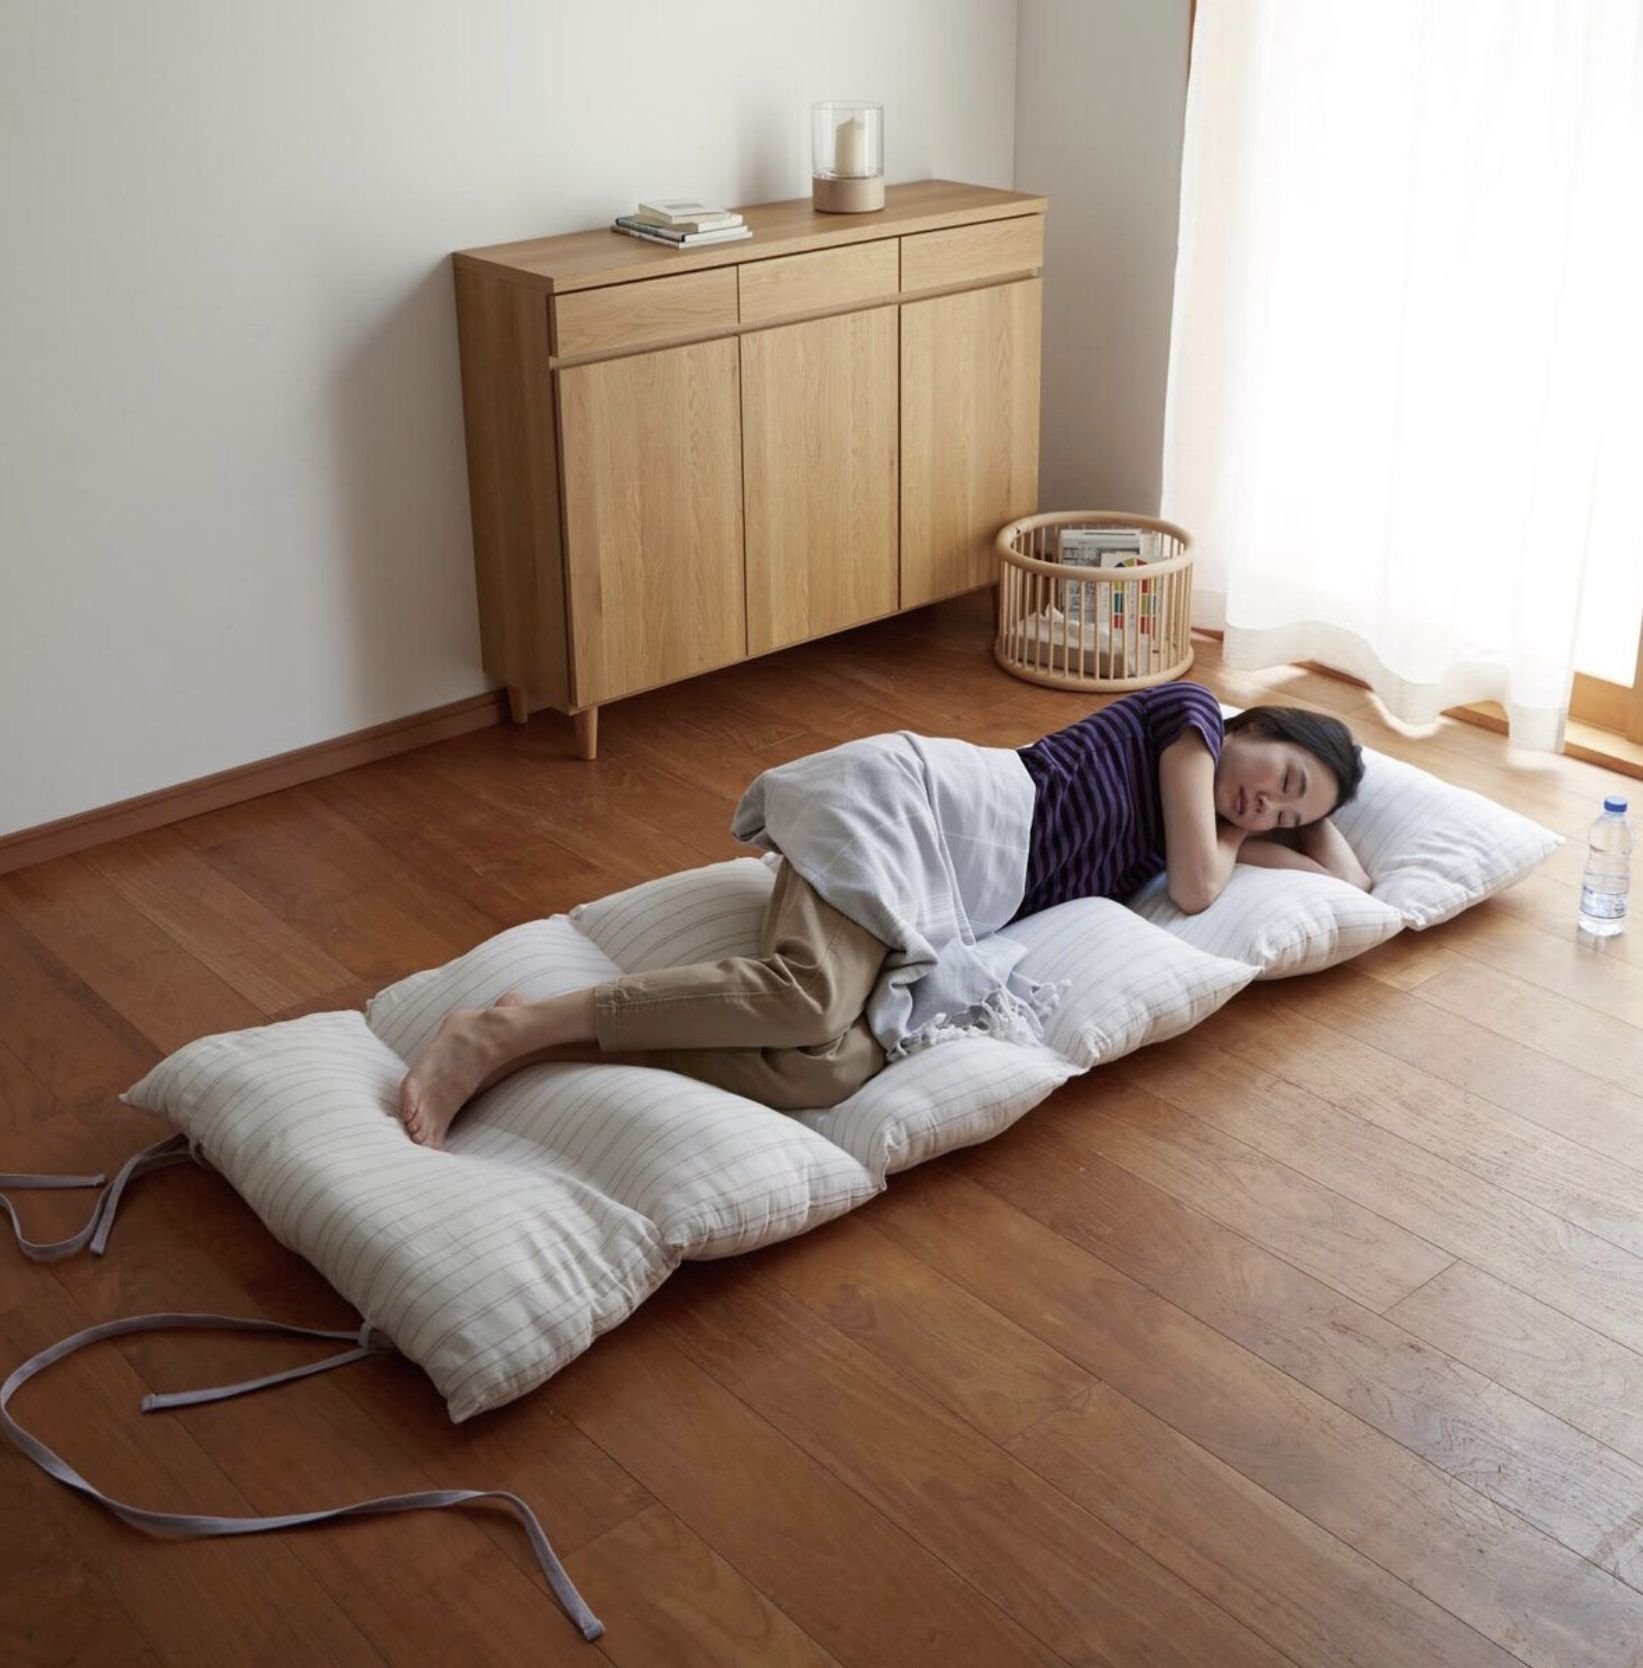 Сплю без матраса. Японская кровать на полу. Японский матрас для сна на полу. Японский Футон для сна. Японская кровать матрас на полу.